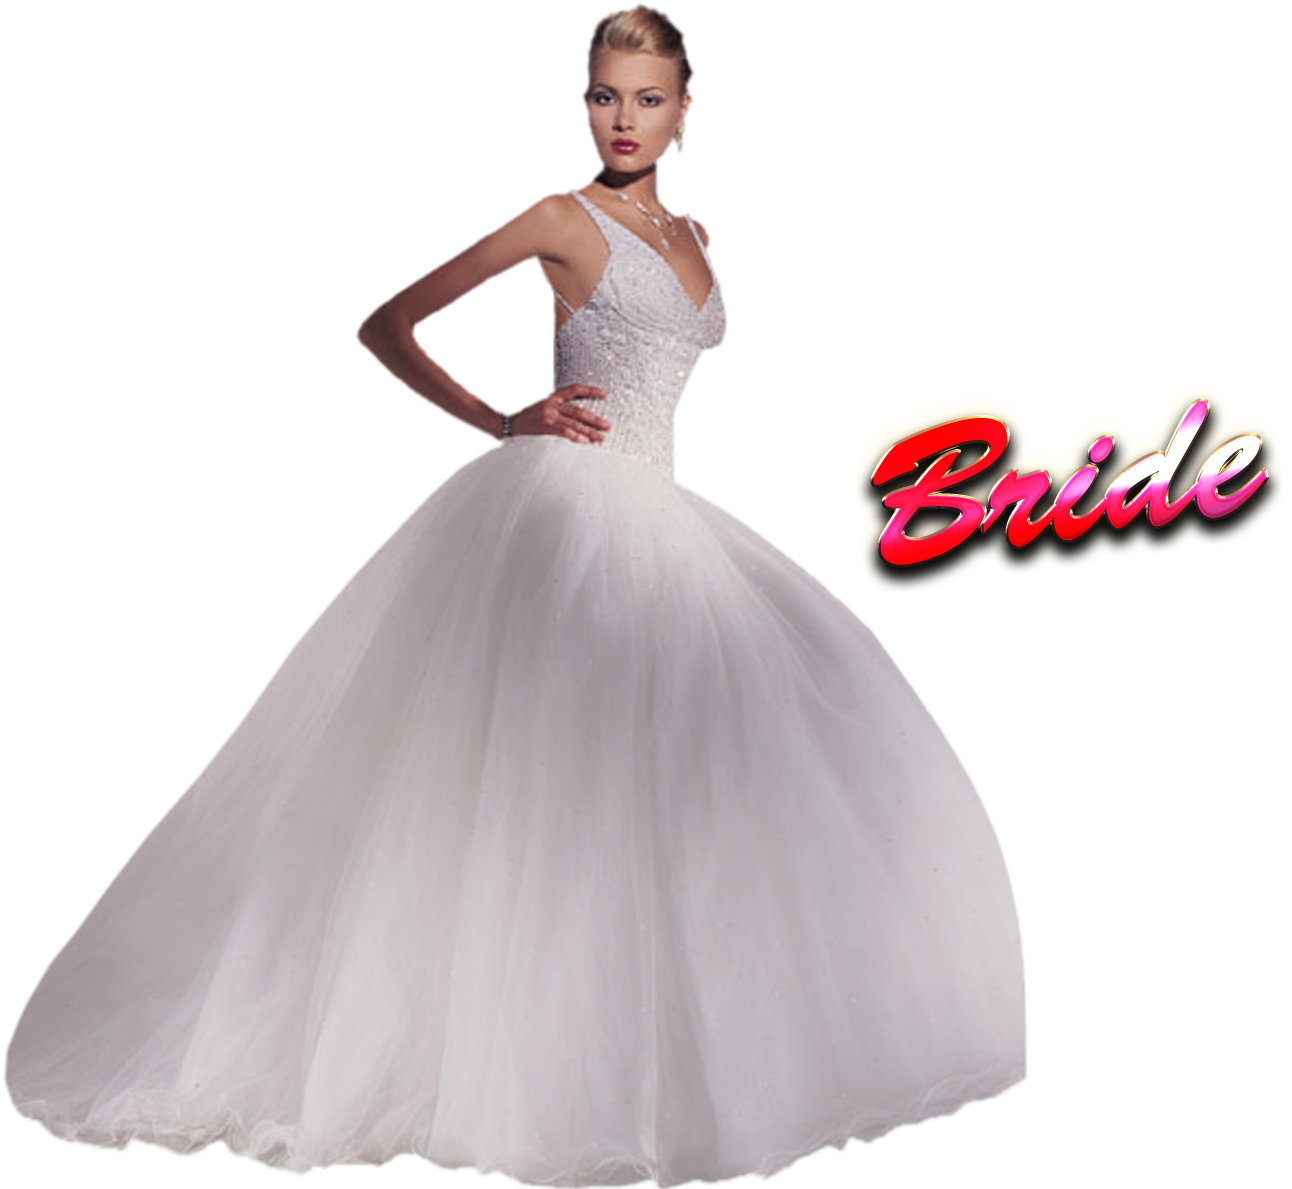 Bride (1444x1200), Png Download